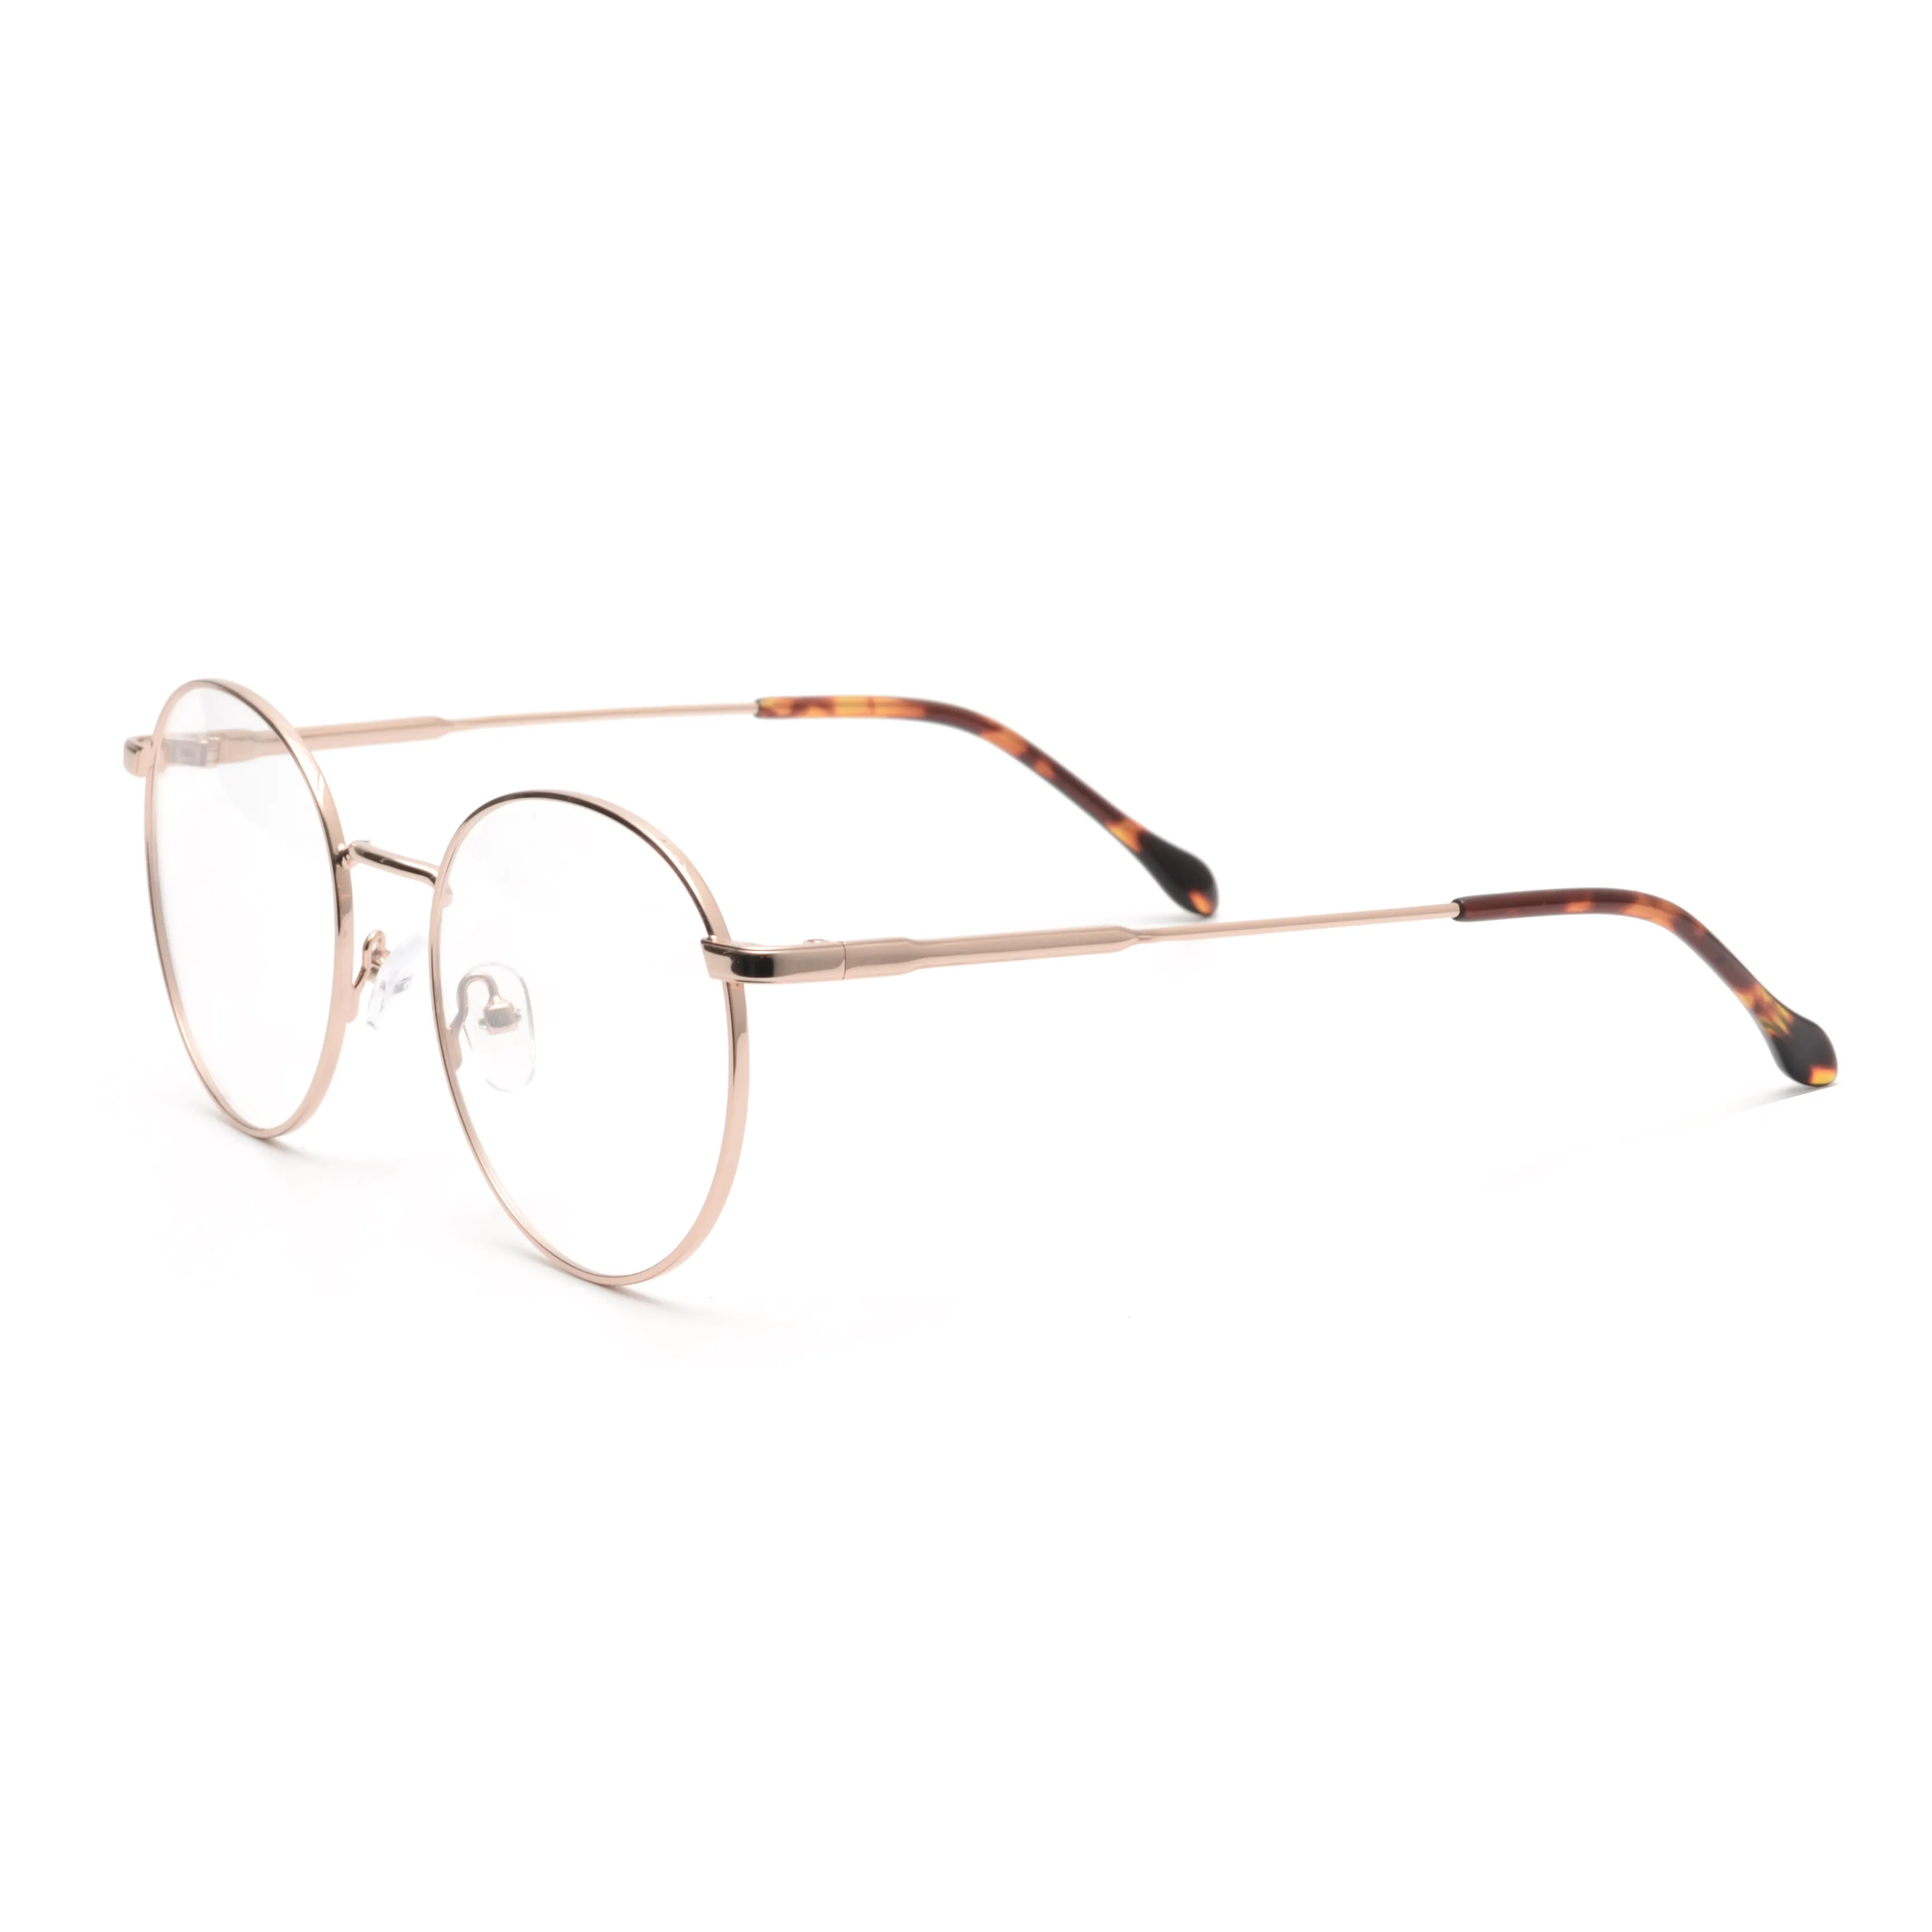 Vintage klasik yuvarlak gözlük çerçeveleri Metal gözlük çerçeveleri erkek kadın toptan optik gözlük çerçevesi